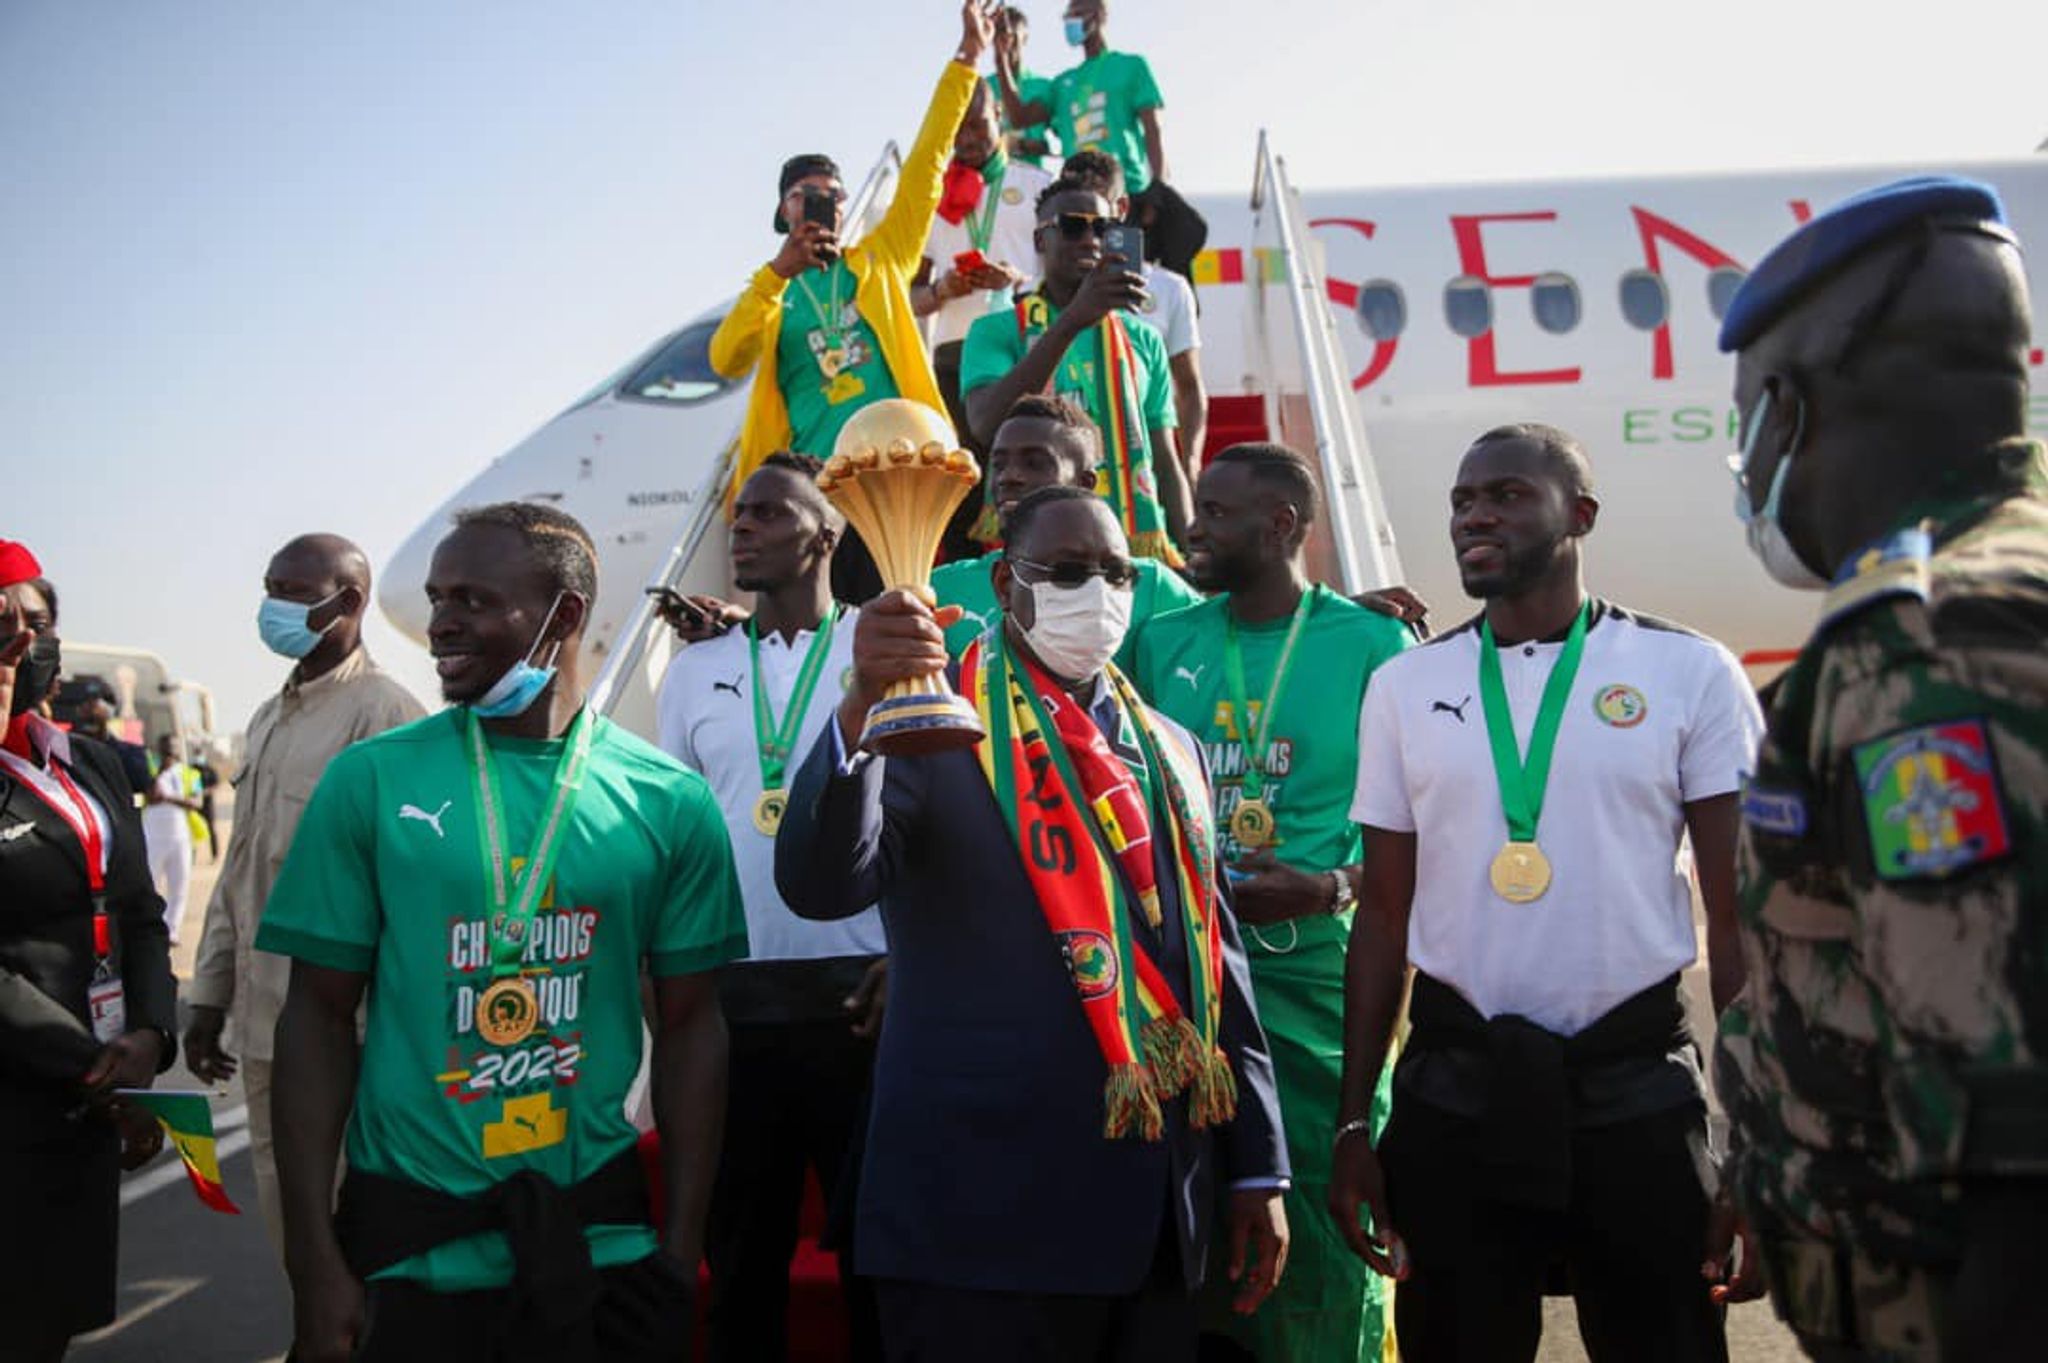 POLYCOPIÉ - Le Sénégal a accordé des primes et des lots de terrain aux membres de son équipe nationale de football, qui a remporté, pour la première fois de son histoire, la Coupe d'Afrique des nations (CAN). Foto: Présidence du Sénégal/Photo de presse/dpa